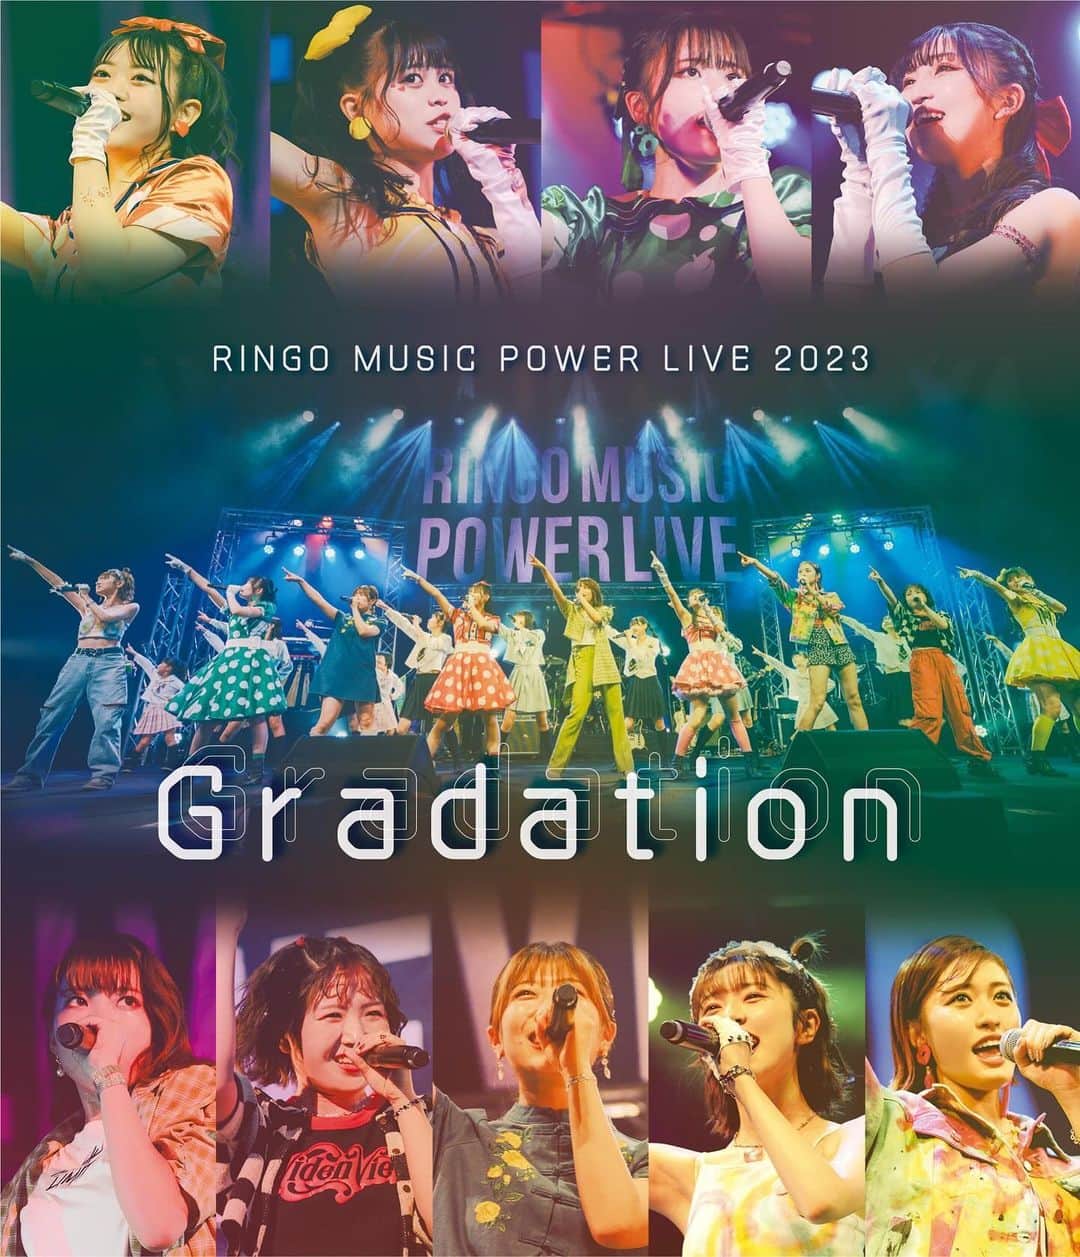 りんご娘のインスタグラム：「. ＼📢2024年1月13日(土)リリース!!／ 💽DVD＆Blu-ray RINGO MUSIC POWER LIVE 2023 〜Gradation〜  RINGO MUSICアーティストが集結!! POWER LIVEがSpecial Editionにて初のDVD&Blu-ray化!!  2023年9月9日〜10日の2日間にわたり弘前⽂化センター ⼤ホールにて開催された「RINGO MUSIC POWER LIVE 2023 ~Gradation~」より、公演ファイナルの全22曲&MC、そして特別企画「RINGO MUSIC 早口言葉」を収録。新たにカットを追加＆リエディットされた映像、リマスターされた臨場感あるサウンド、そして回替わりで披露された楽曲＆早口言葉まで収録した完全版!!  【出演】 #りんご娘 #ライスボール #ジョナゴールド #アルプスおとめ #リーフ #王林 【サポート】#thegentleband  ✅購入特典＆リリースイベントはRINGO MUSIC HPをチェック!!  _____  RINGO MUSIC POWER LIVE 2023 〜Gradation〜 発売日：2024年1月13日(土)  【DVD】 品番：RMCD 1042 価格：¥6,380（税込） ※ブックレット16P付 ※2枚組仕様 JAN：4560221780502  【Blu-ray】 品番：RMCD 1043 価格：¥7,480（税込） ※ブックレット16P付 JAN：4560221780519  01. -Opening- 02. 愛のグレーゾーン 03. レインボー 04. 未来NIPPON 05. ボクは土手町の時計台 06. ニジイロリンゴ 07. パラレループ 08. リンゴのうた 09. りんごに恋したマメコバチ 10. SEBADAVA MAINEBION 11. -RINGO MUSIC 早口言葉- 12. Rain Dance 13. 風待ちリップ 14. つづいていくよ 15. アメリア 16. バスターミナル 17. 目指せ！ファーストレディ 18. LOVE&SOLDIER 19. JAWAMEGI NIGHT!! 20. Candy Apple 〜恋はあせらず〜 21. 0と1の世界 22. 夢のシャトルラン 23. りんごの木 24. アメノチヒカリ  -Bonus Track- 01. ハローグッバイ 02. SEBADAVA MAINEBION（1公演目） 03. ハジマリズム 04. JET GIRL 05. JAN-KEN-PON 06. SEBADAVA MAINEBION（2公演目） 07. Yeah-Yeah 08. WEEKEND 09. JIGA-JIGA  -RINGO MUSIC 早口言葉- ・1公演目 ・2公演目」